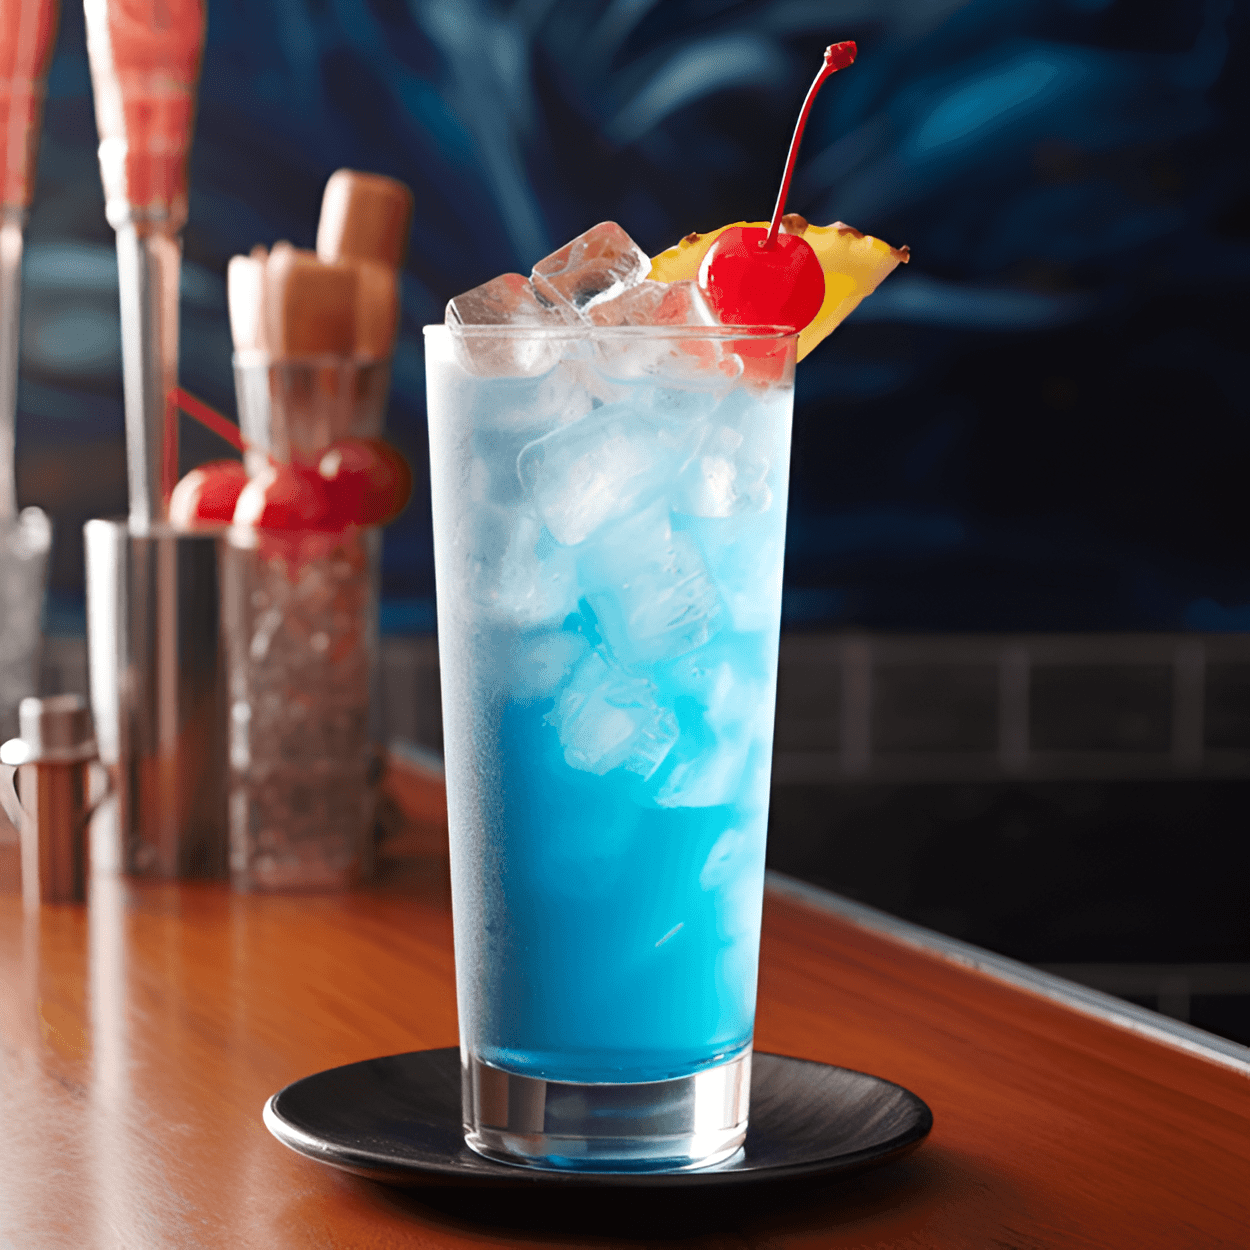 Blue Ocean Cóctel Receta - El Blue Ocean es un cóctel dulce y afrutado con un refrescante sabor tropical. El curacao azul le da un toque cítrico, mientras que el jugo de piña agrega una dulzura ácida. El vodka proporciona una base fuerte y suave que equilibra la dulzura de los otros ingredientes.